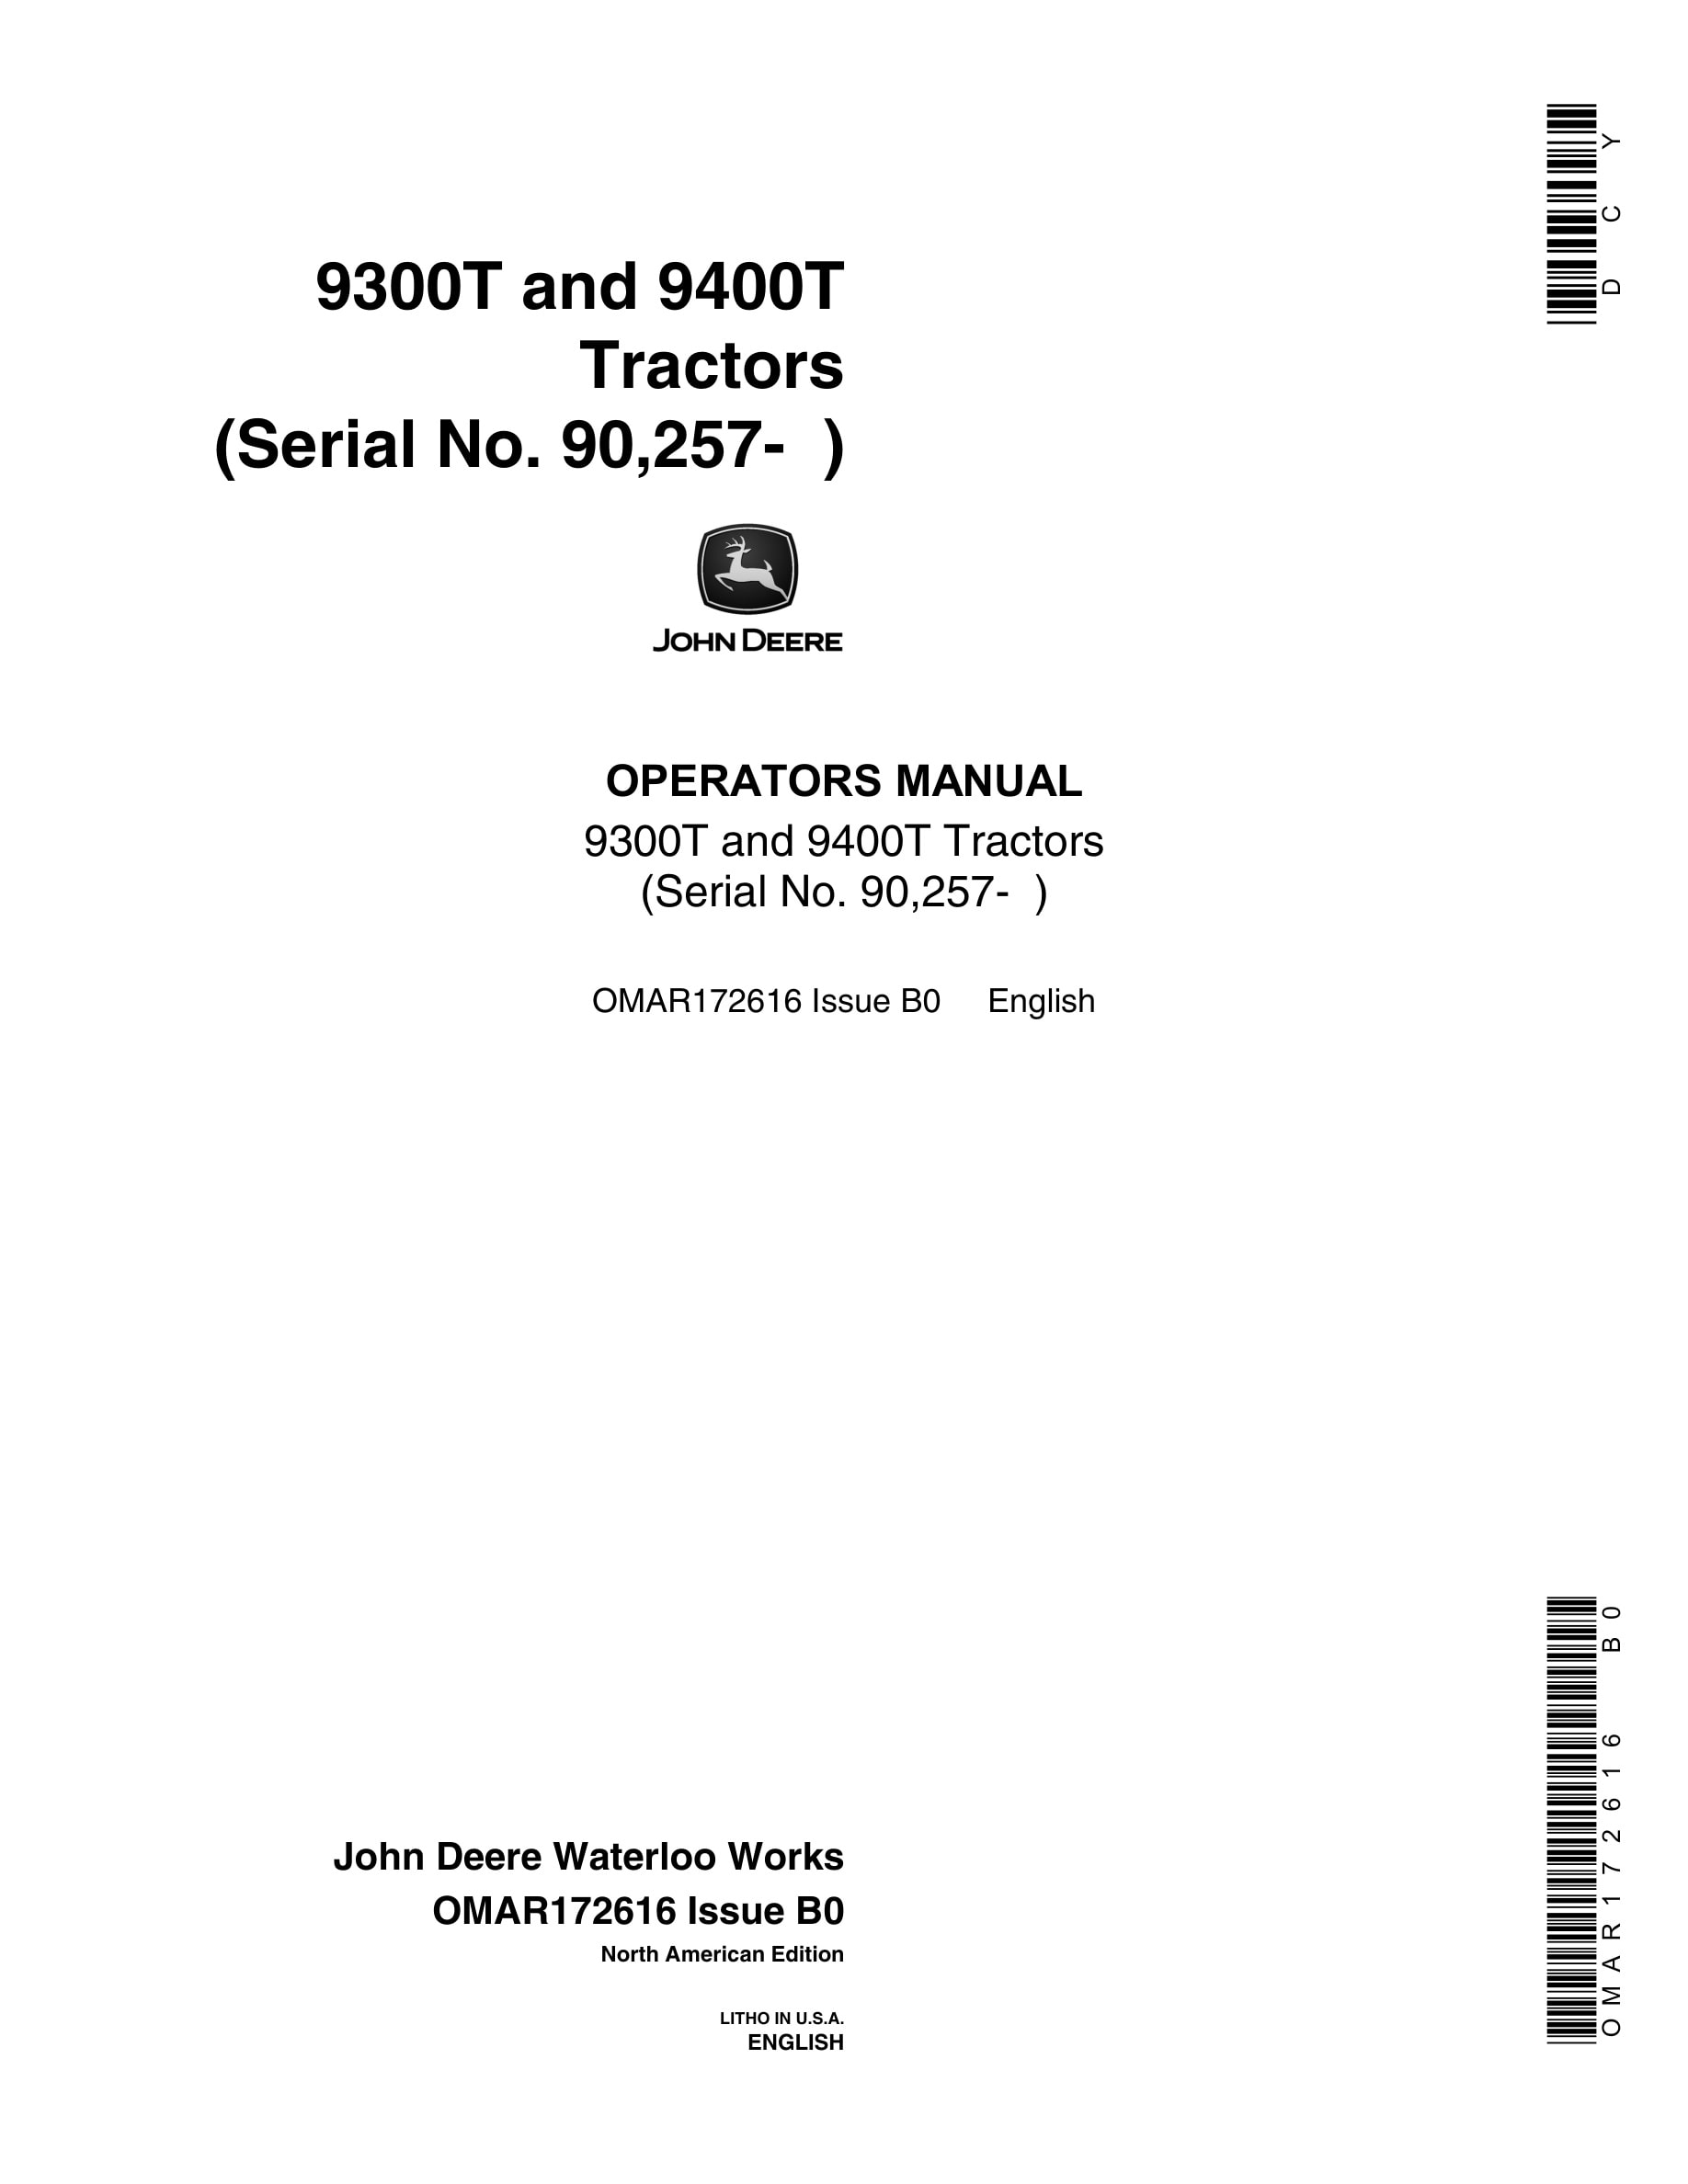 John Deere 9300T and 9400T Tractor Operator Manual OMAR172616-1